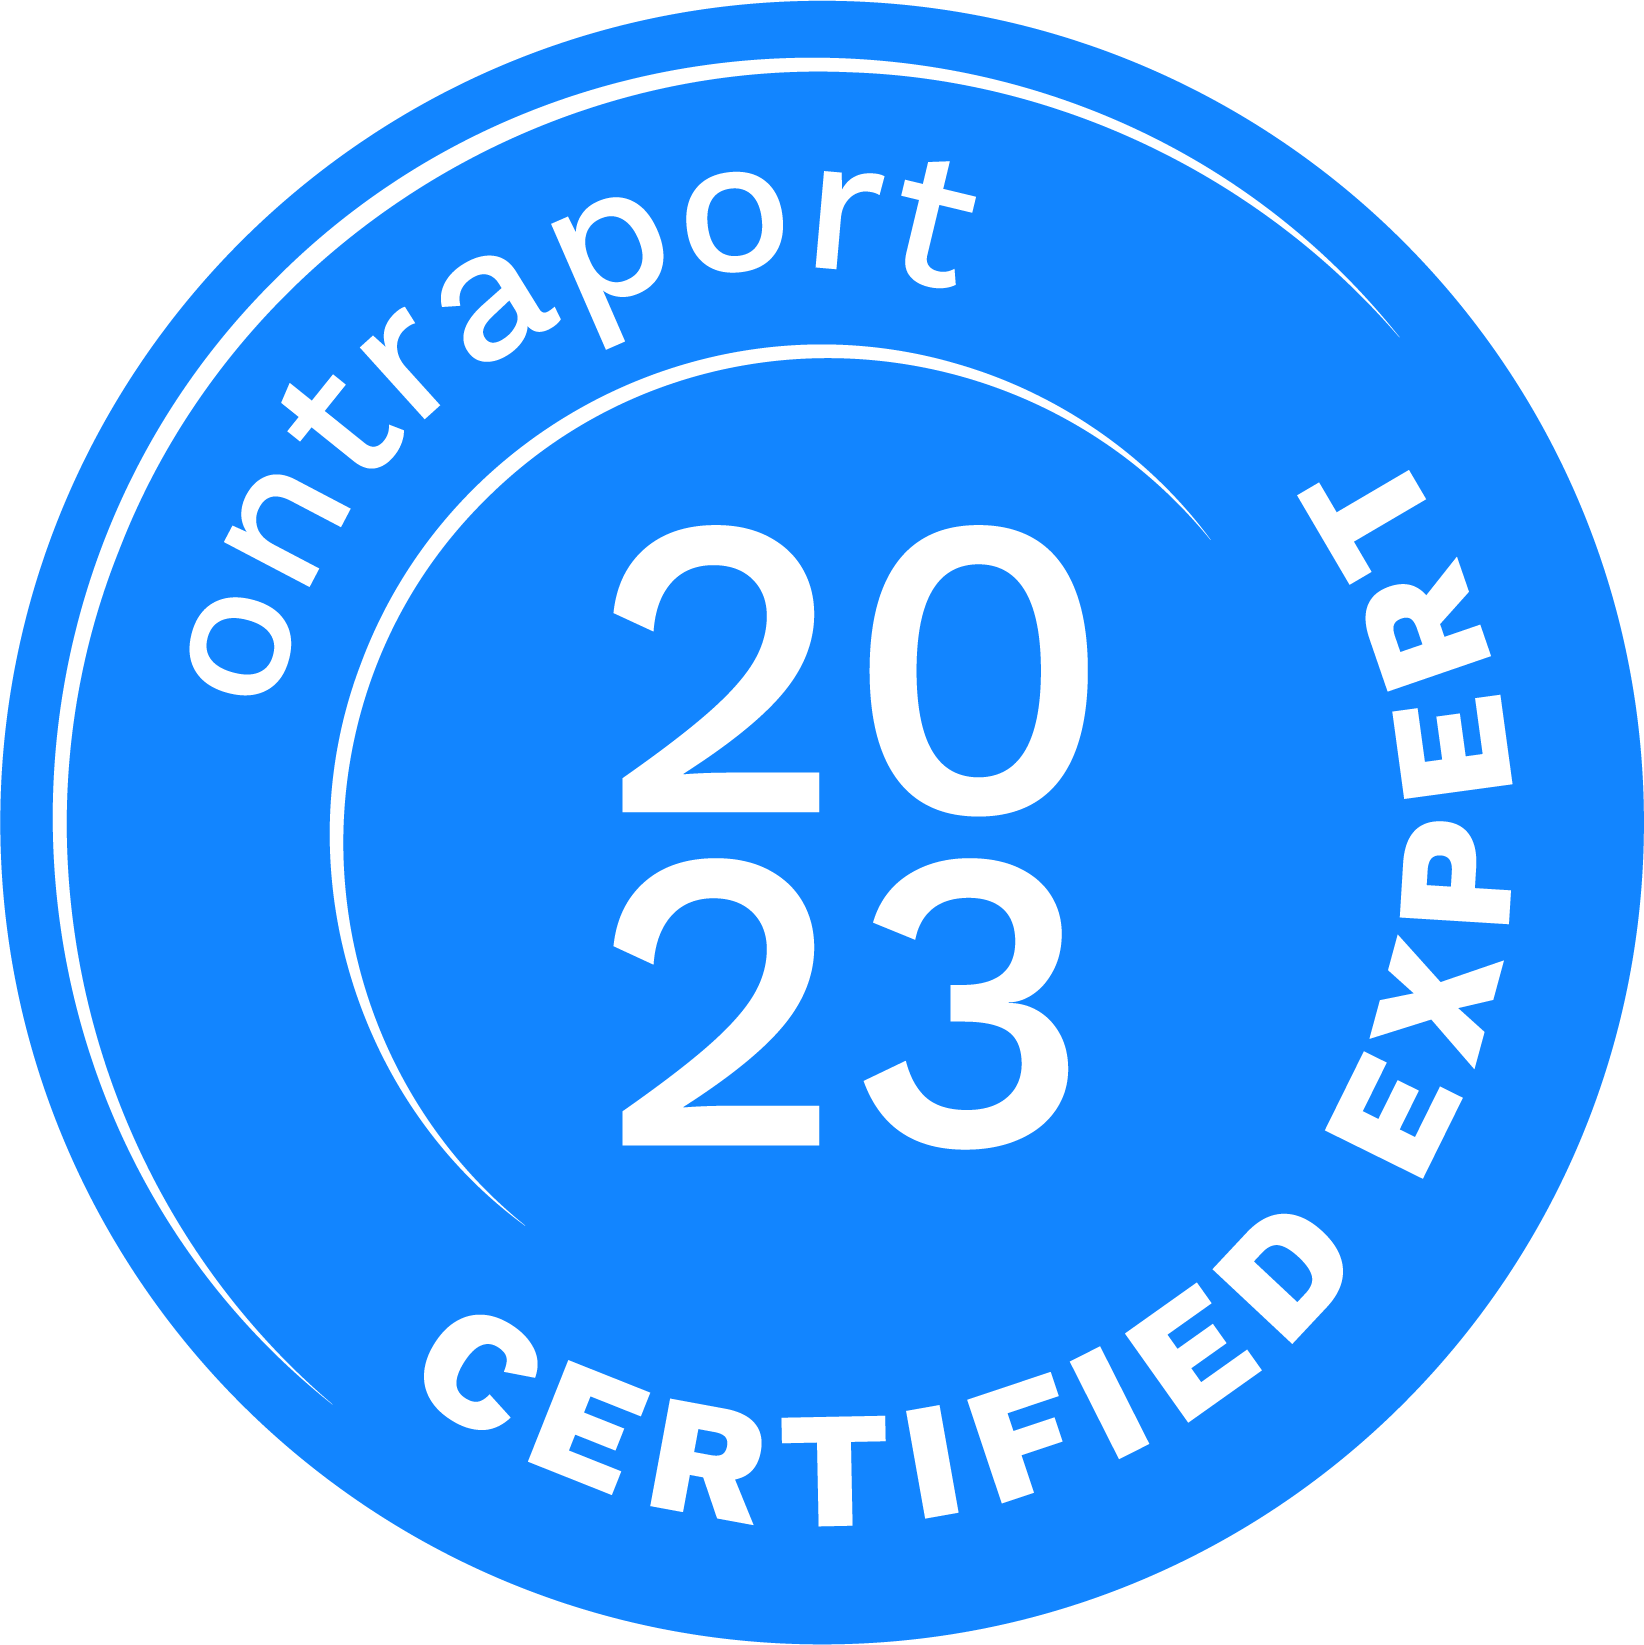 ontraport certified expert badge